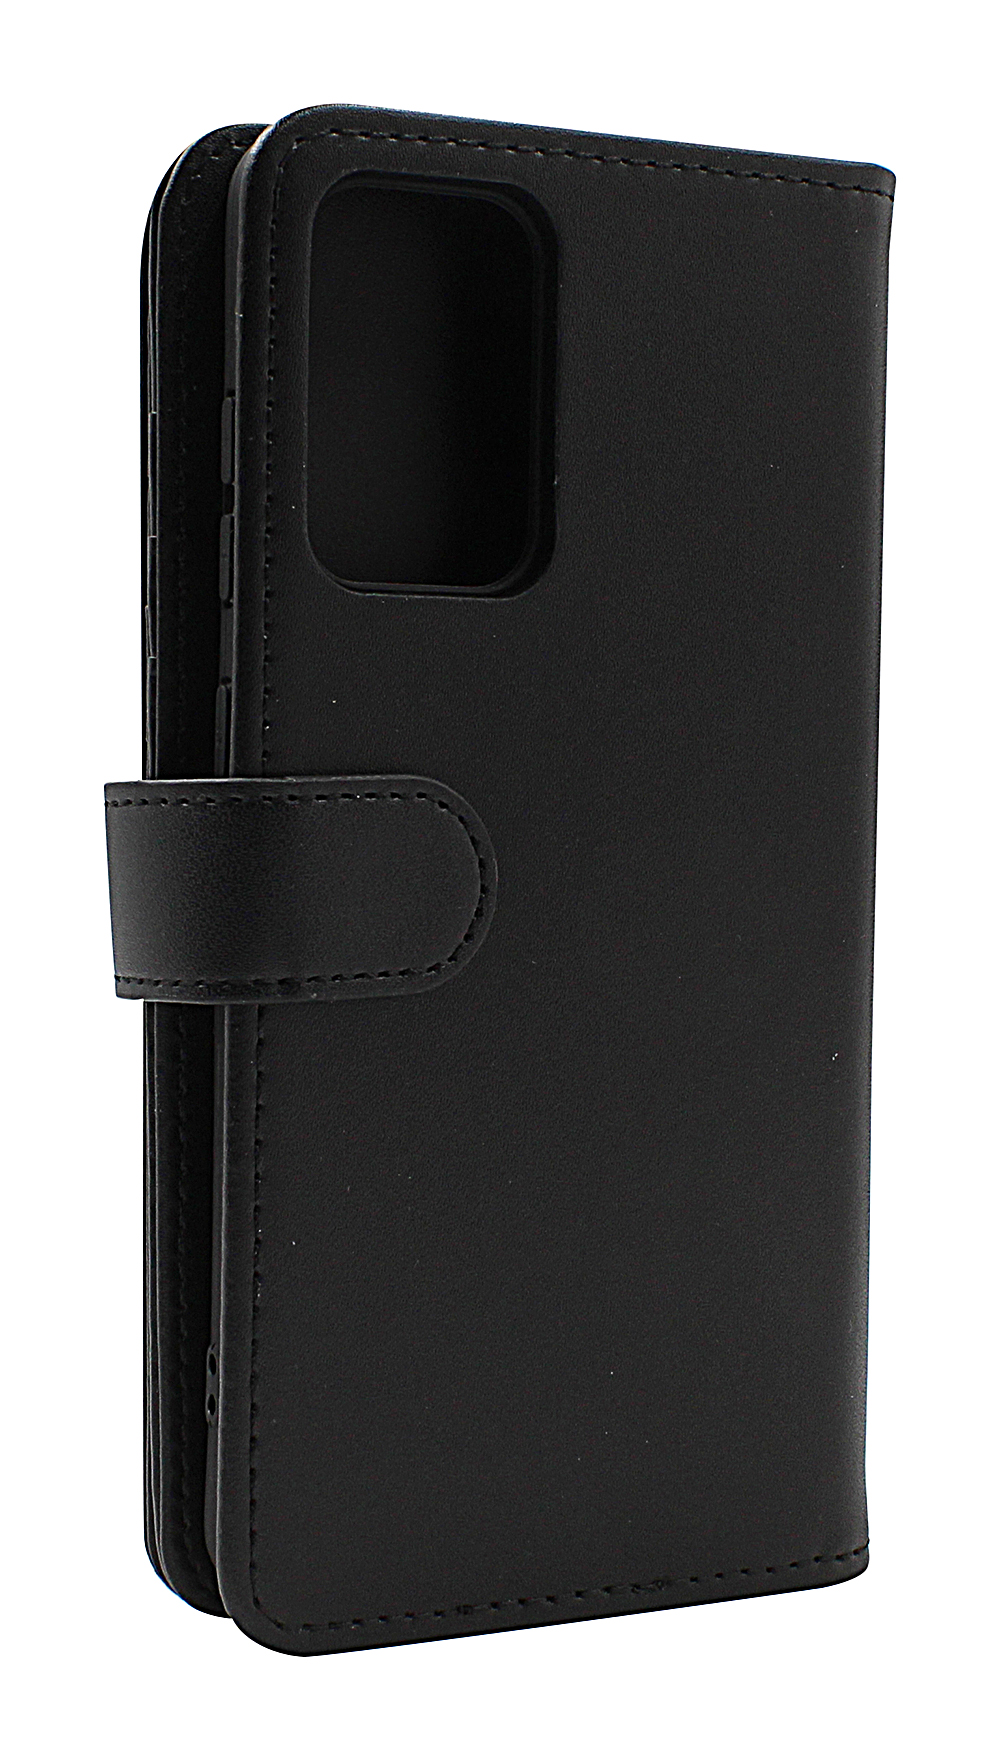 Skimblocker XL Wallet Samsung Galaxy A52 / A52 5G / A52s 5G